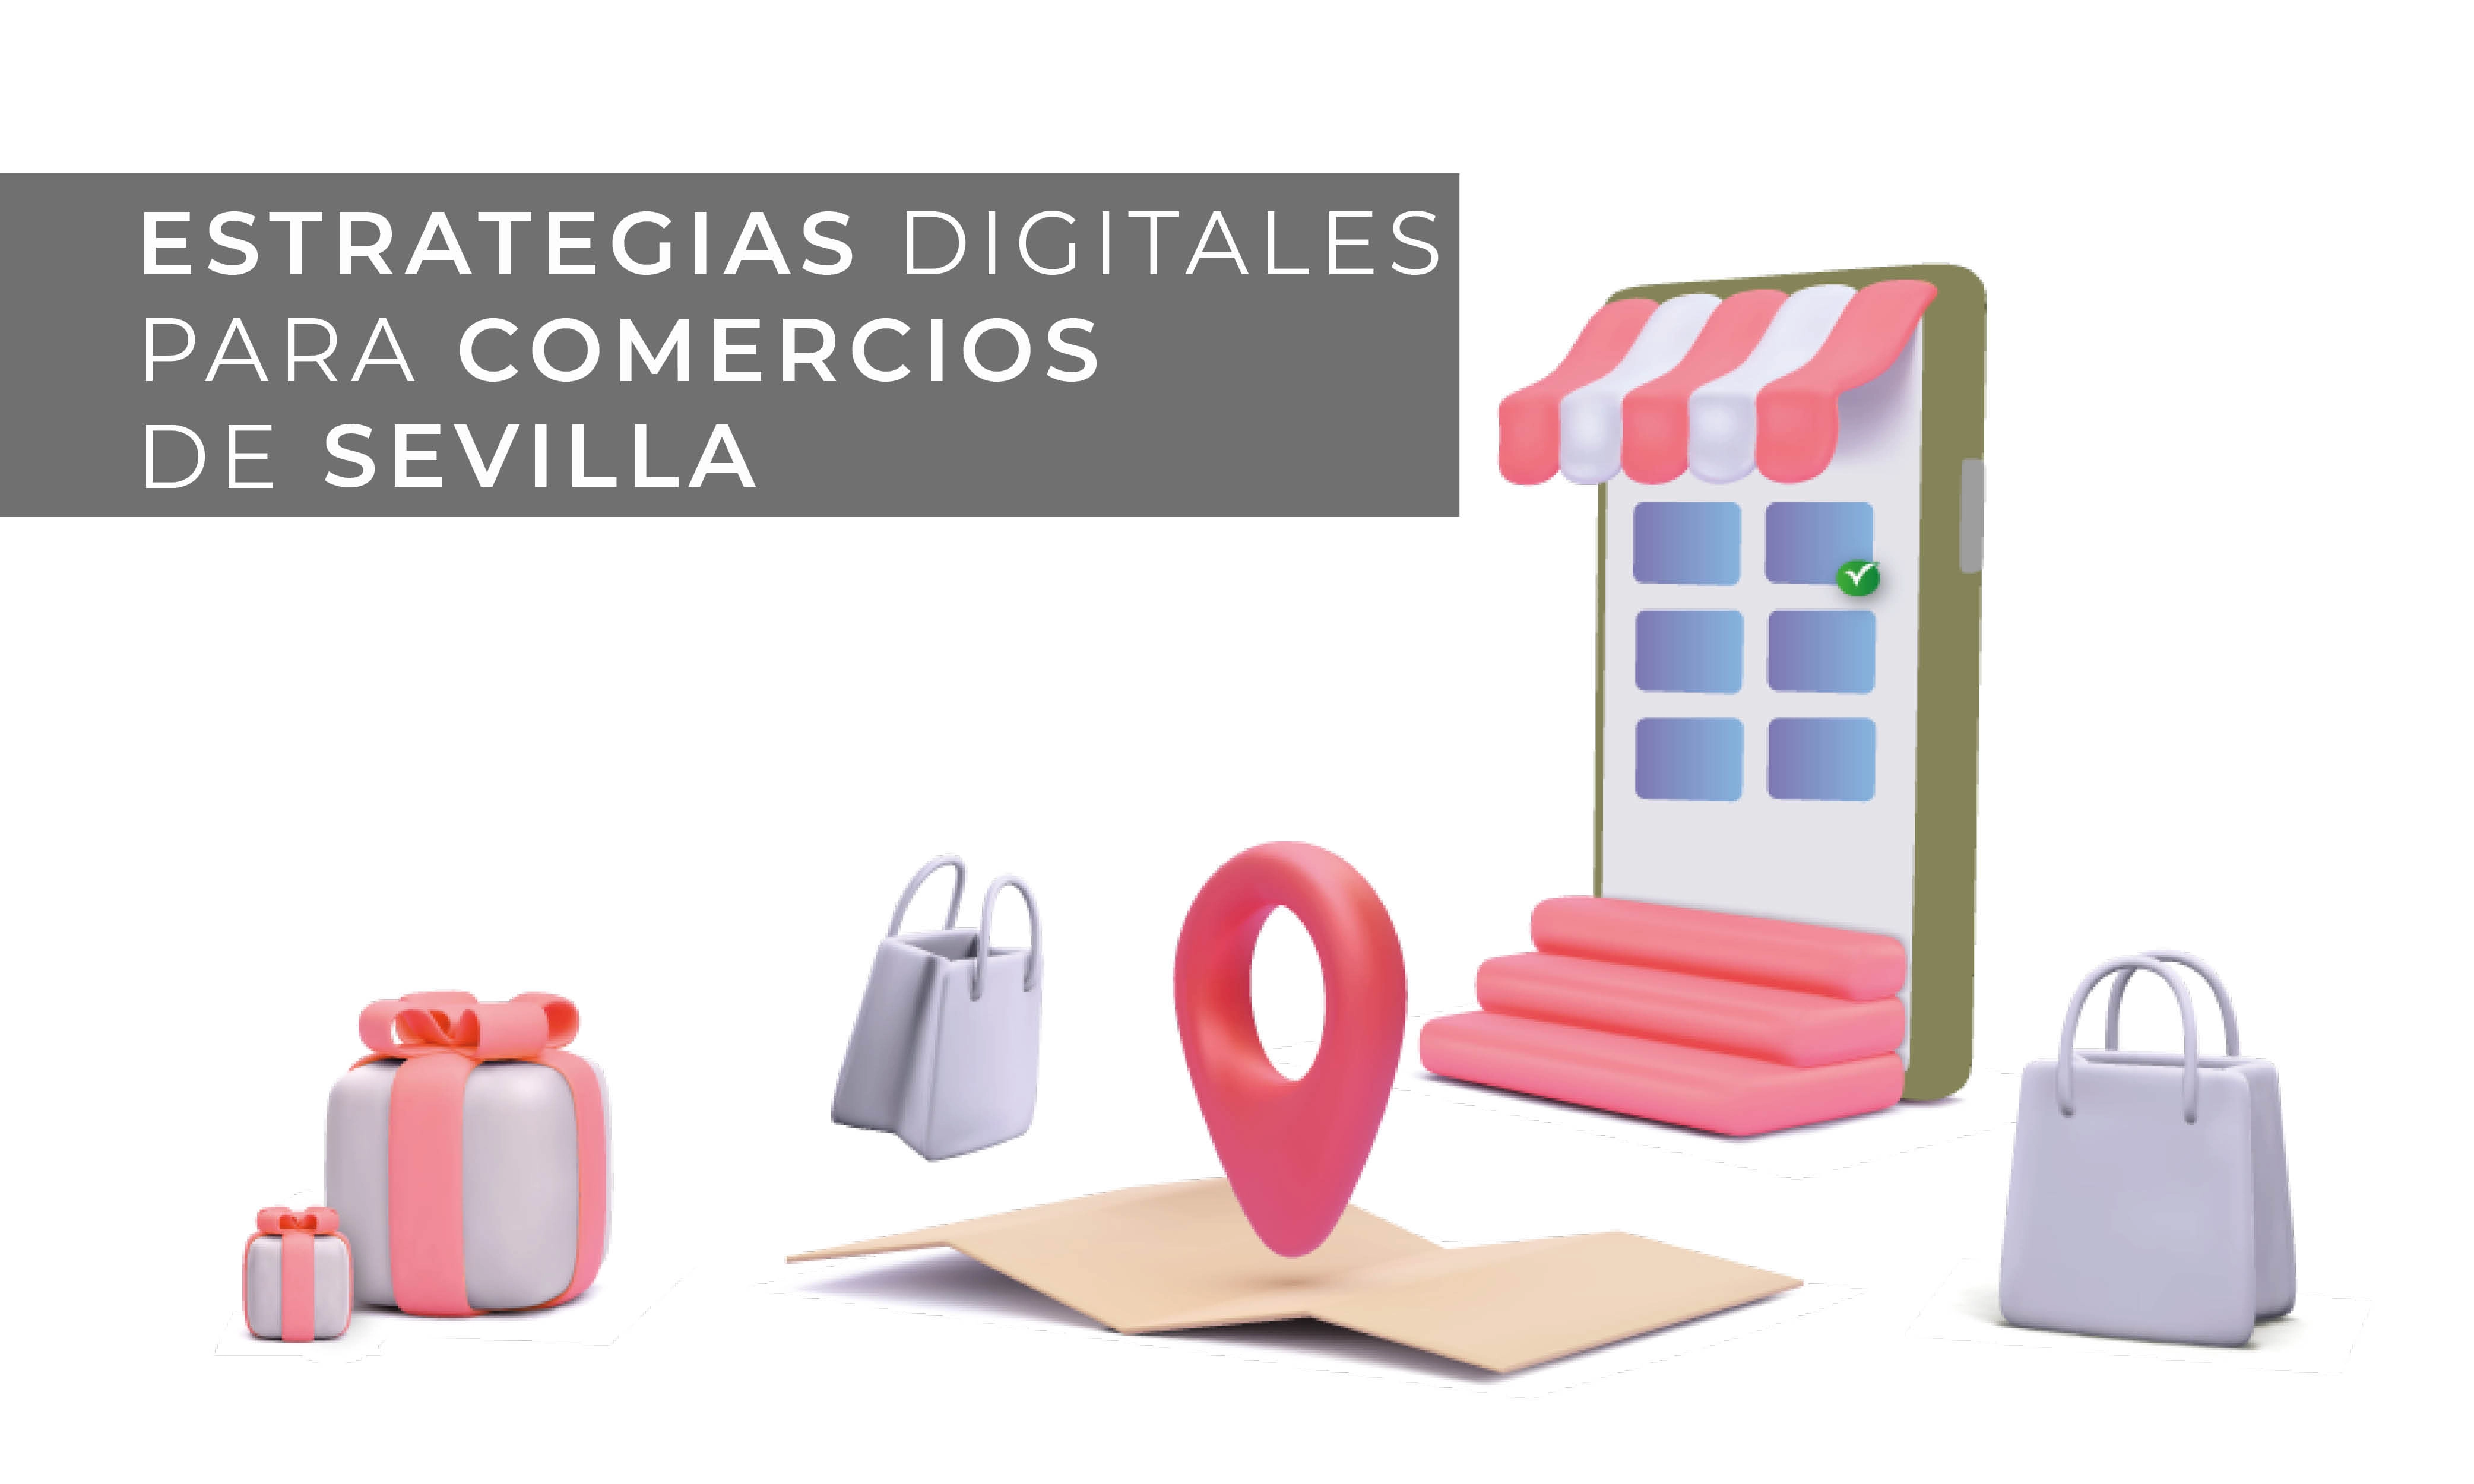 Estrategias digitales para emprendedores y pequeñas o medianas empresas Sevilla